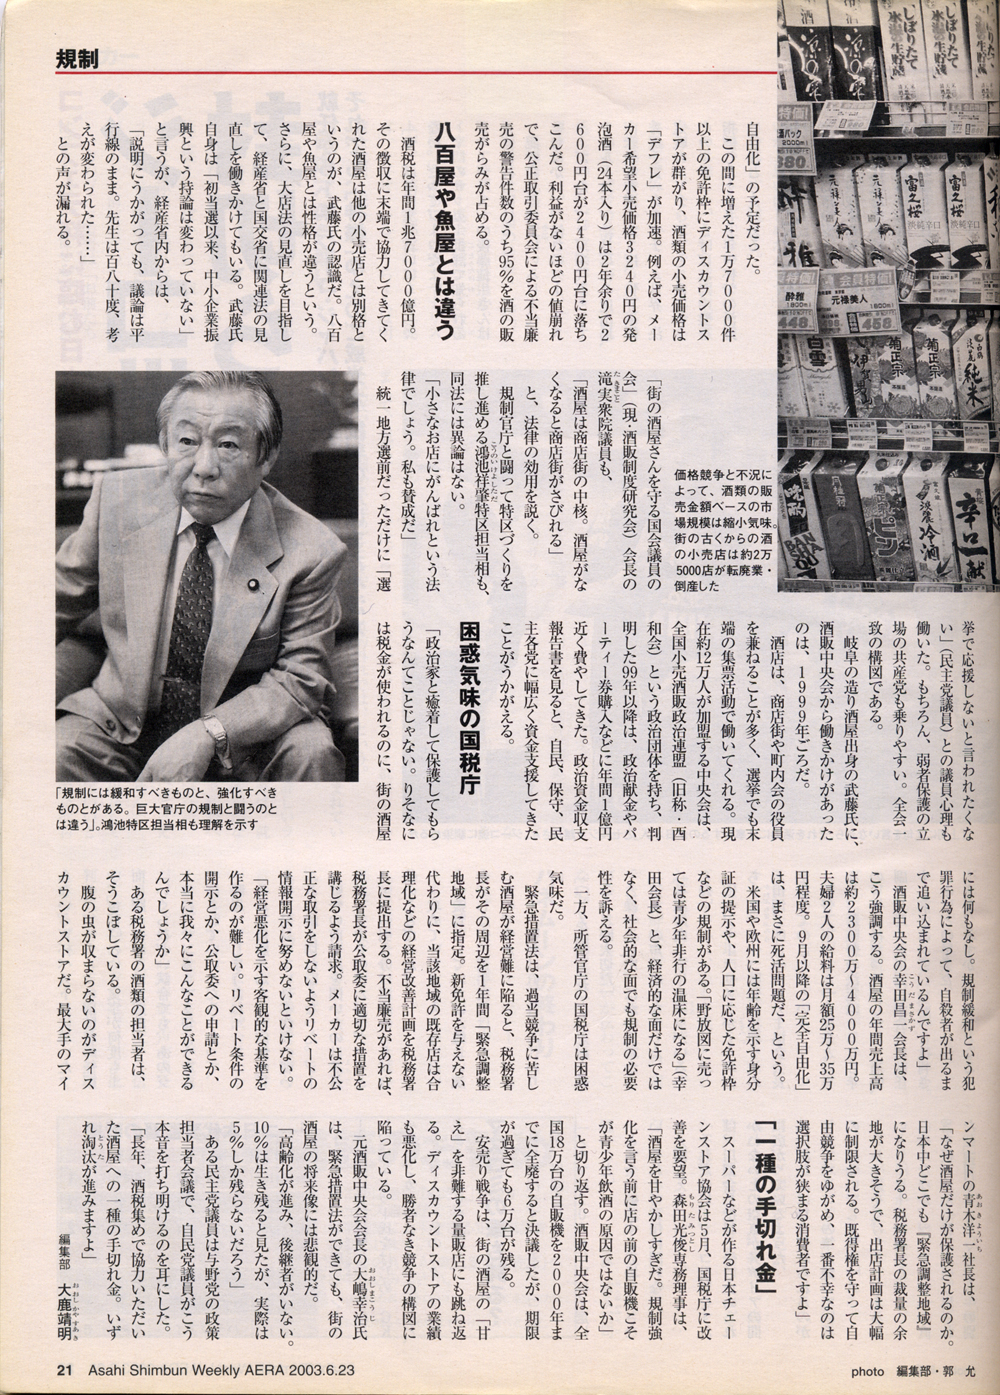 2003年6月23日 朝日新聞社 「AERA」 いまどき勝ち取る「規制強化」 「酒屋の政治力」の中身